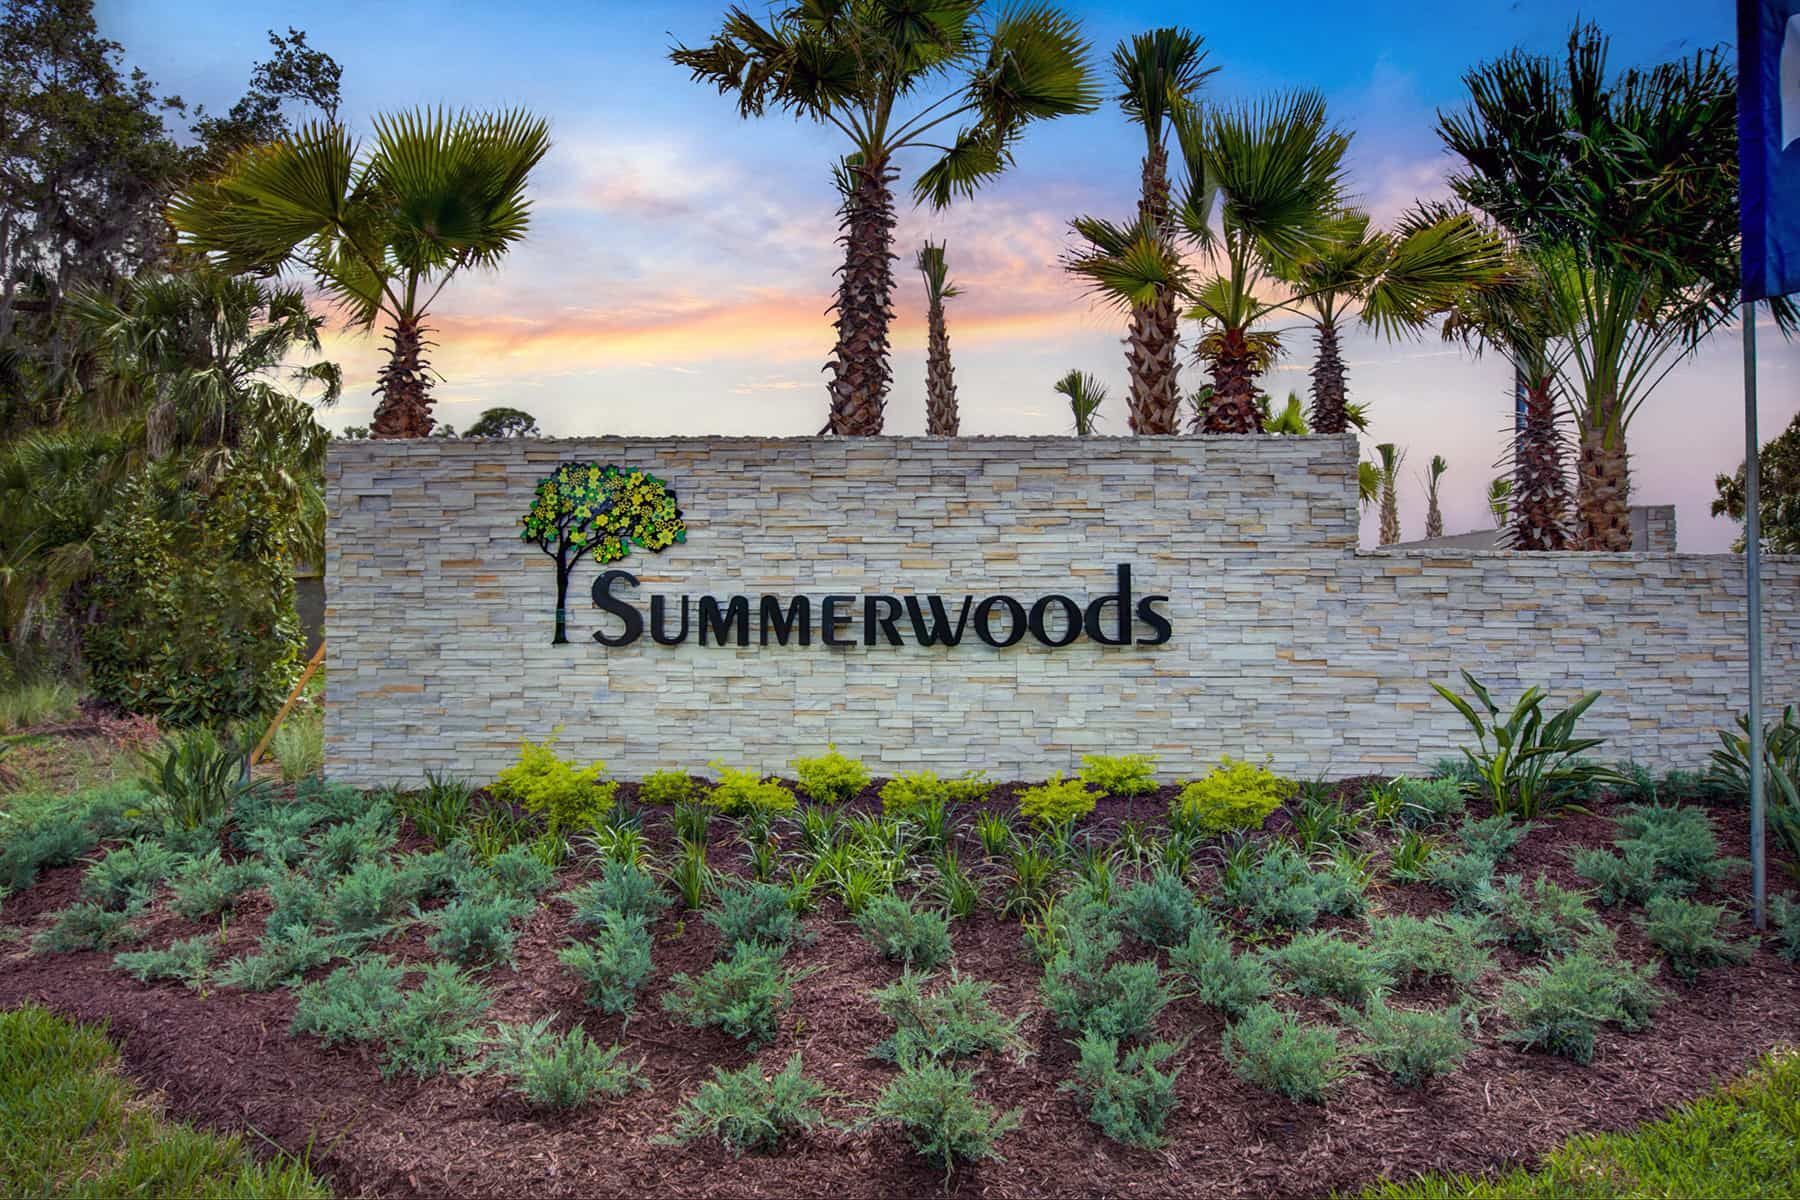 Summerwoods Entrance:Summerwoods Entrance